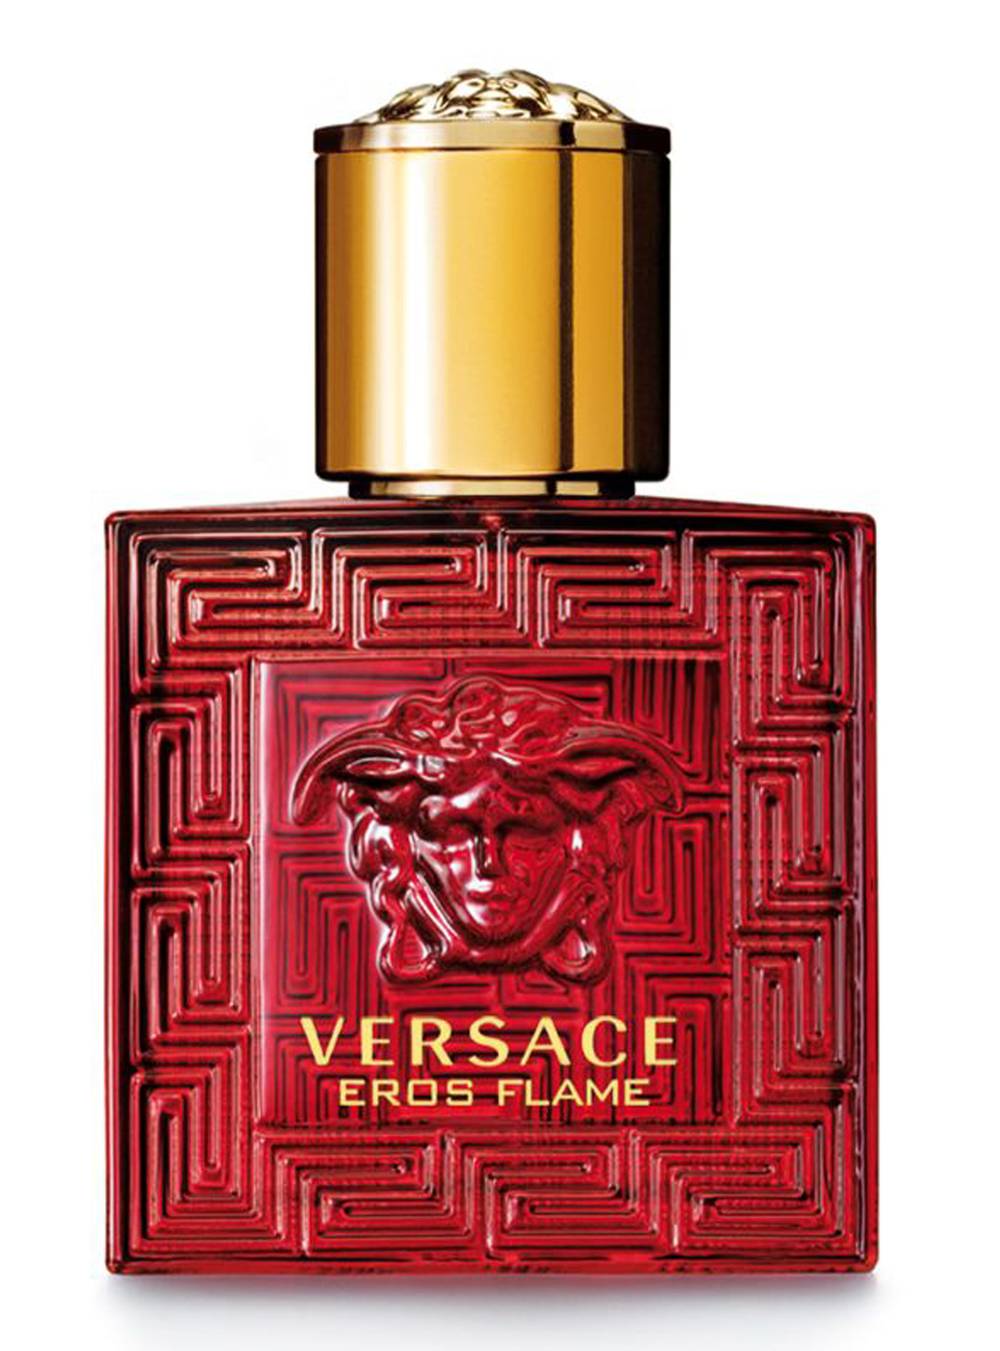 Versace perfume eros flame (30 ml)